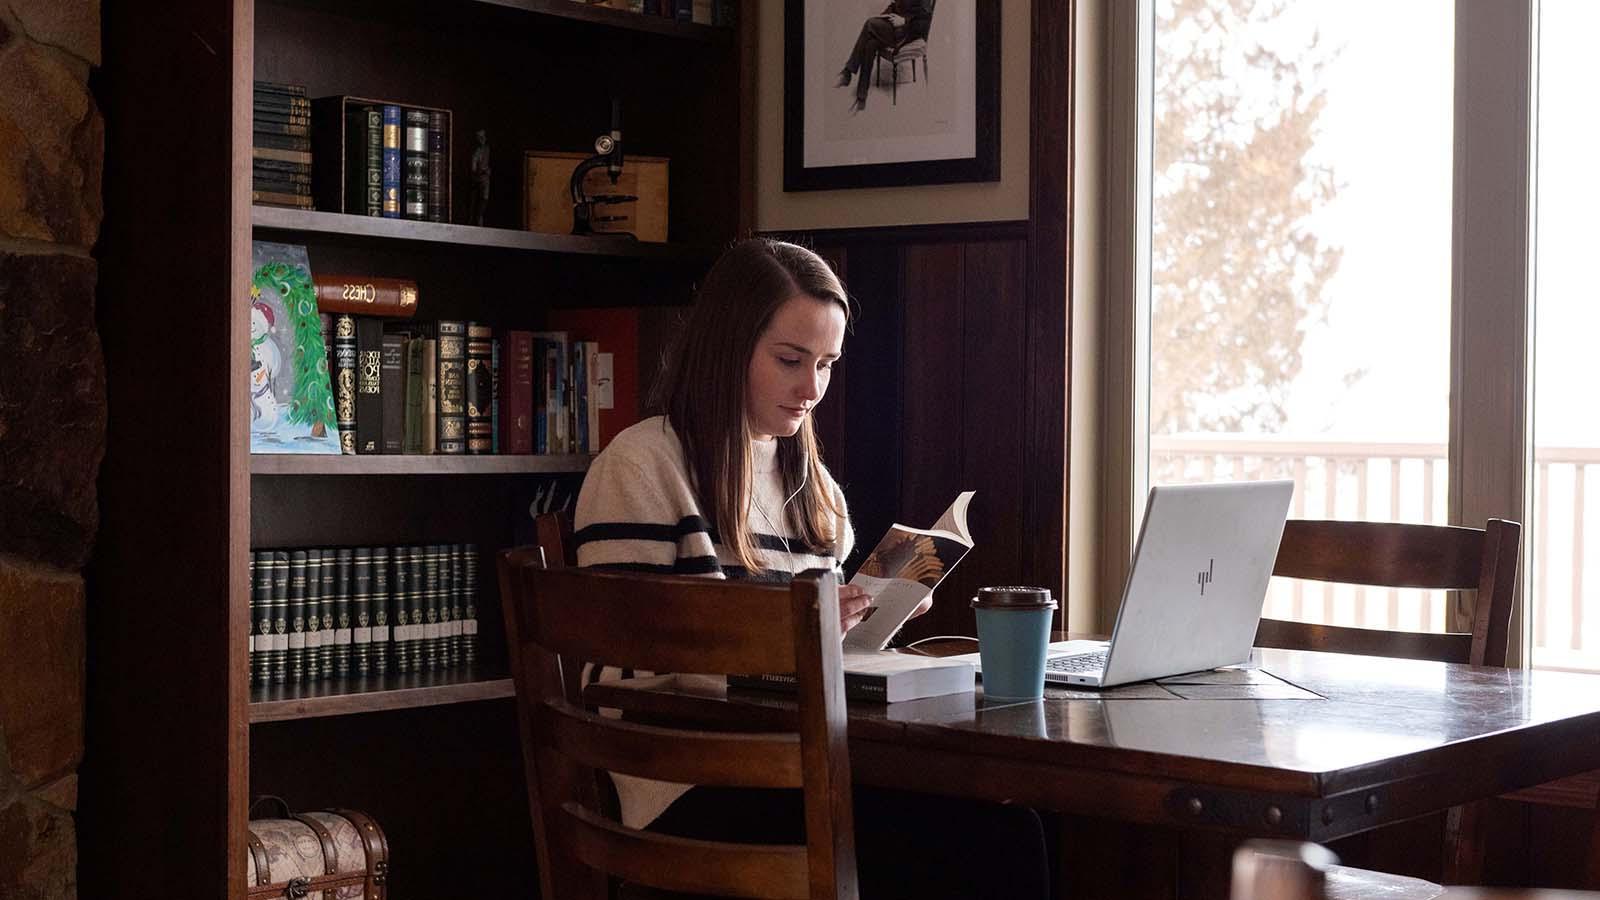 英语学生靠窗阅读，桌上放着咖啡和笔记本电脑